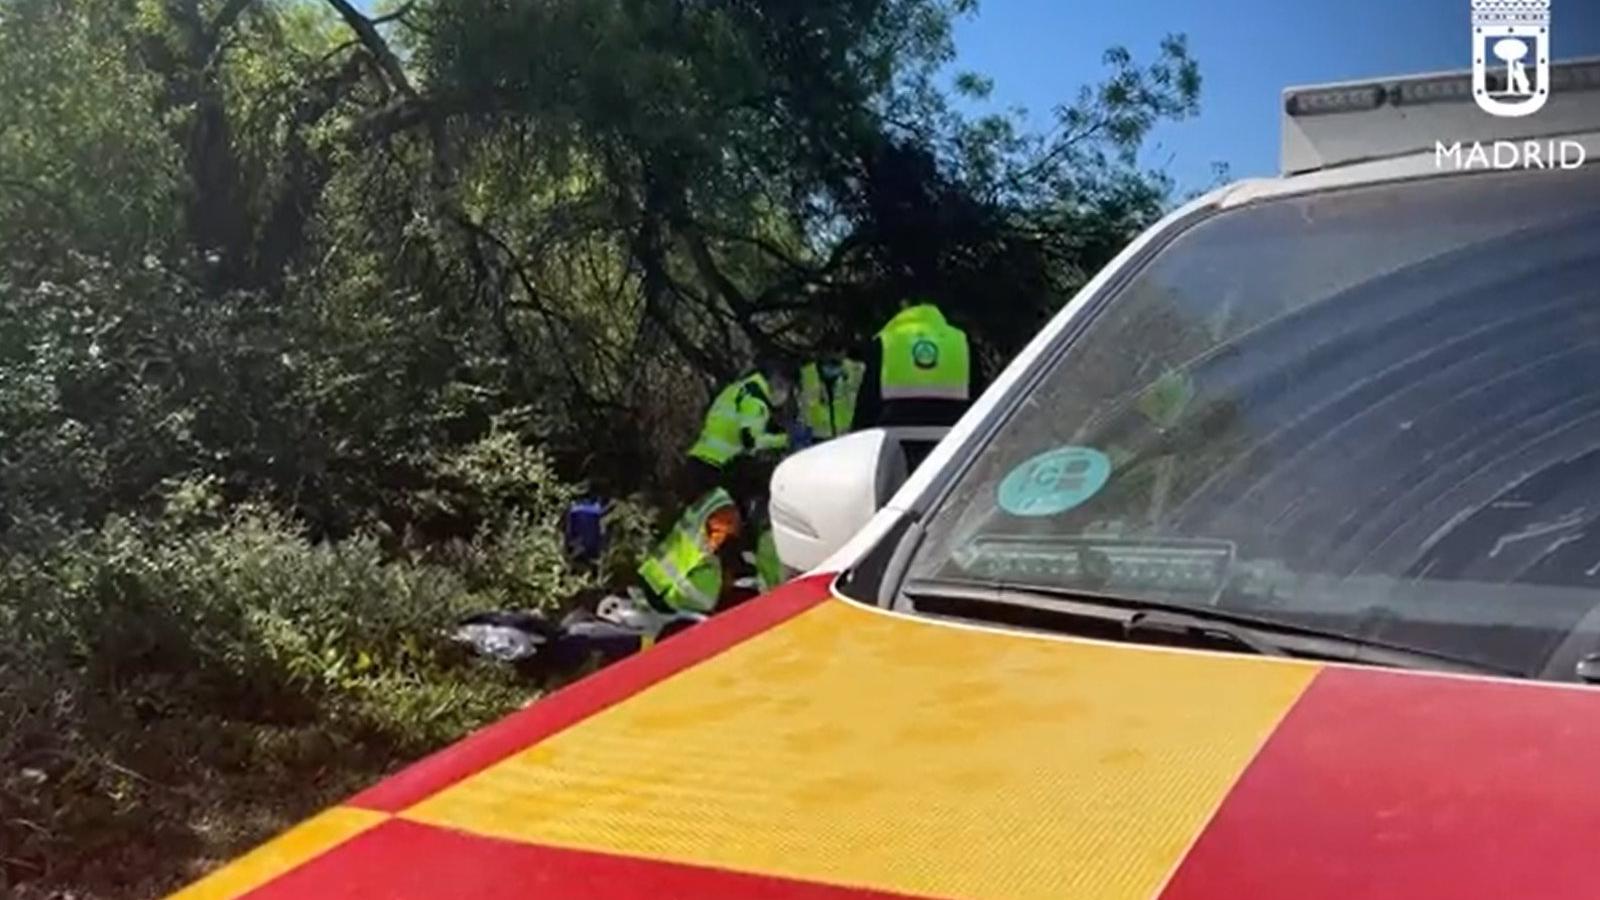  Fallece el hombre de 49 años apuñalado en un camino próximo a la carretera El Pardo-Fuencarral